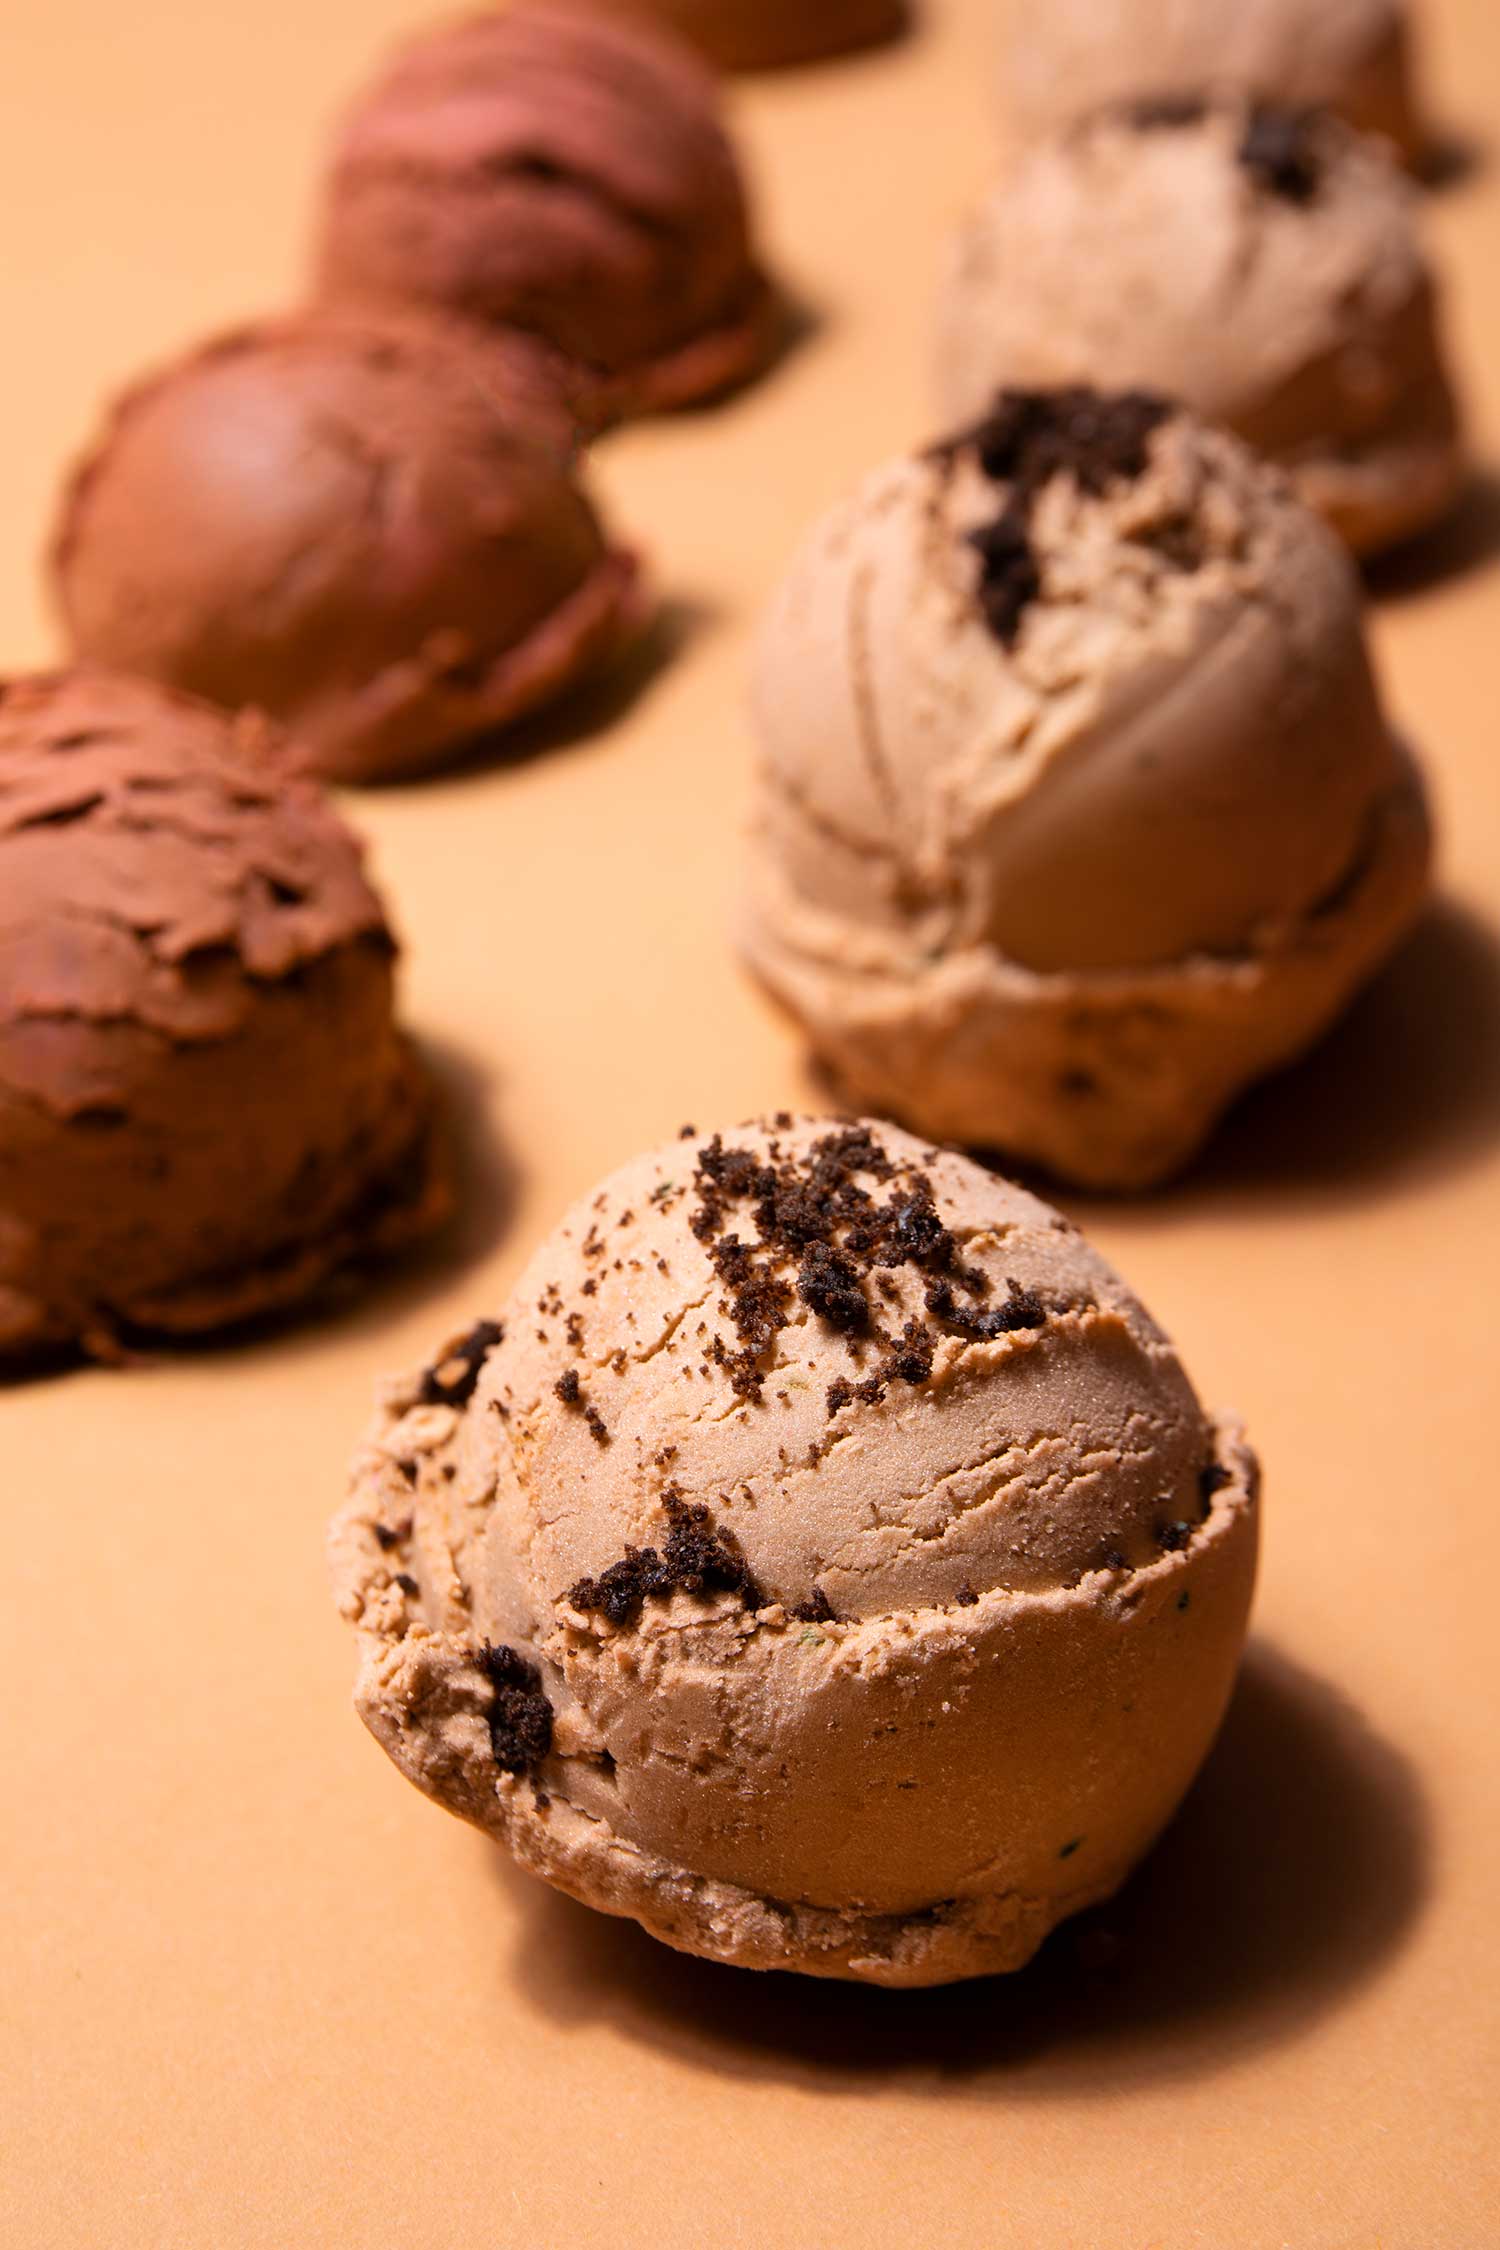 Imatge de detall d'una bola de gelat de xocolata per explicar el procés d'elaboració del gelat 